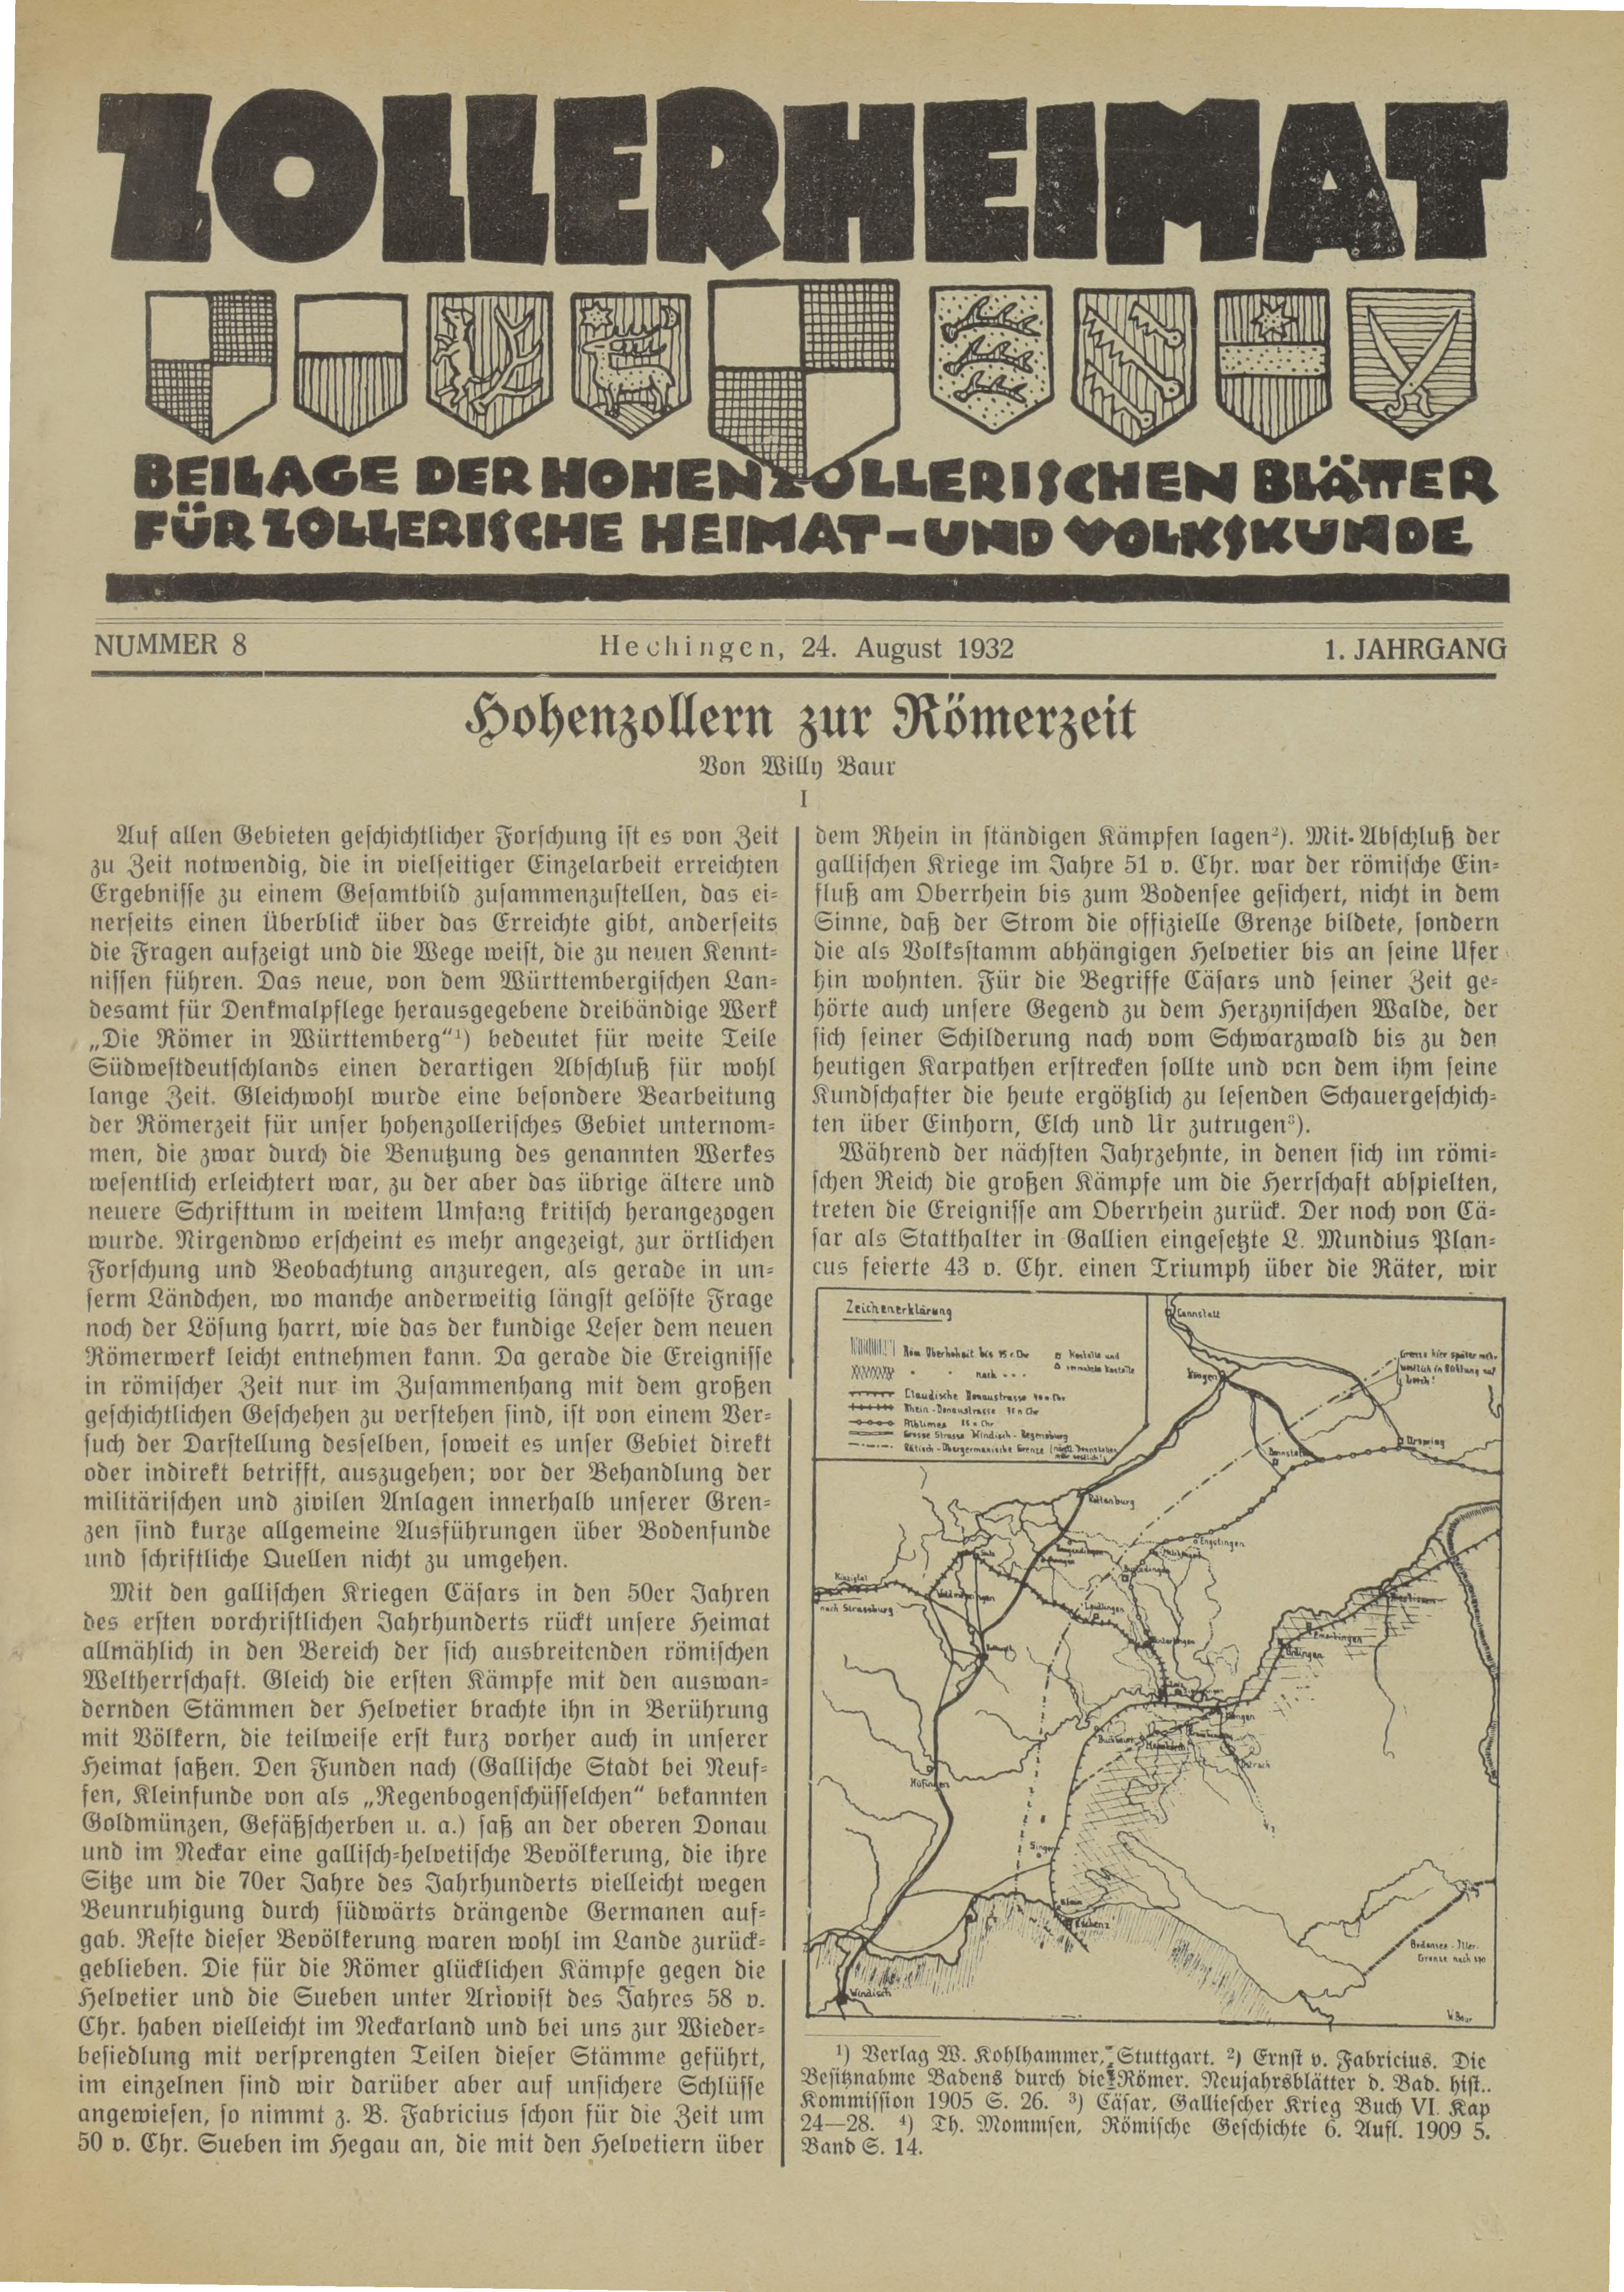                     Ansehen Bd. 1 Nr. 8 (1932): Zollerheimat
                